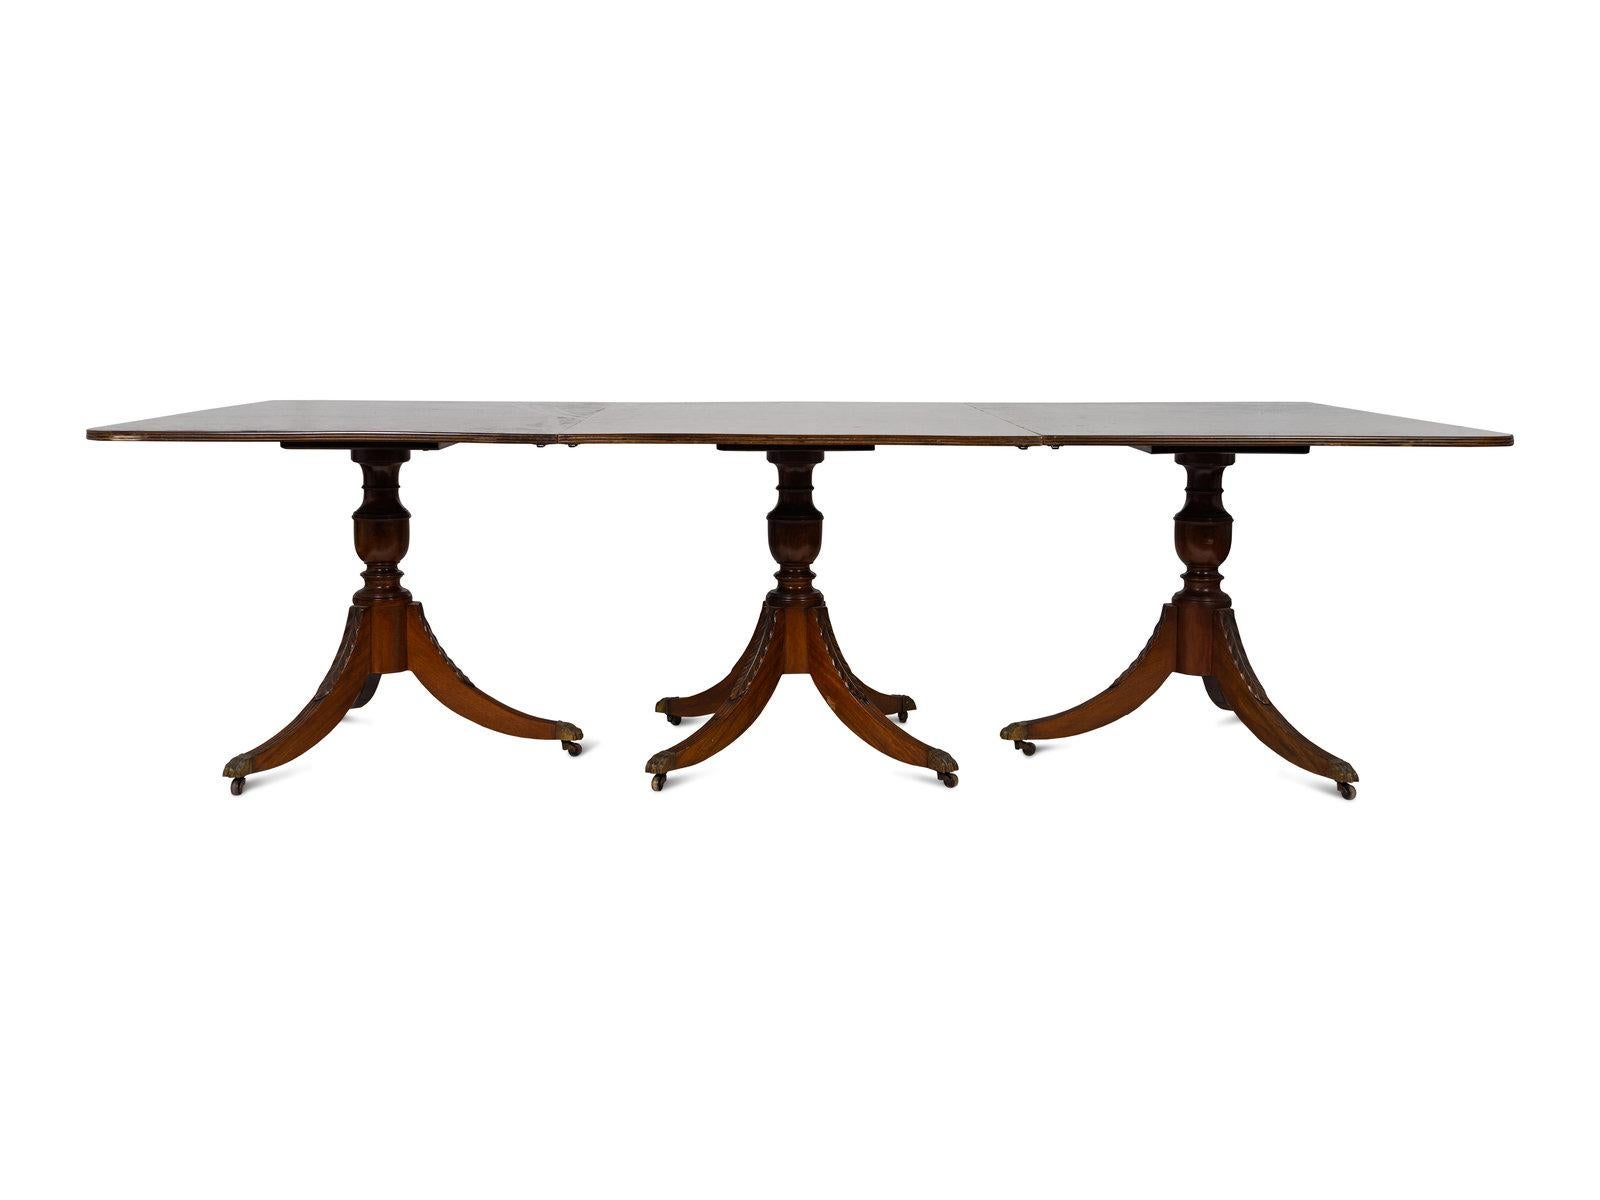 Regency style mahogany three pedestal dining table, early 20th century.
 